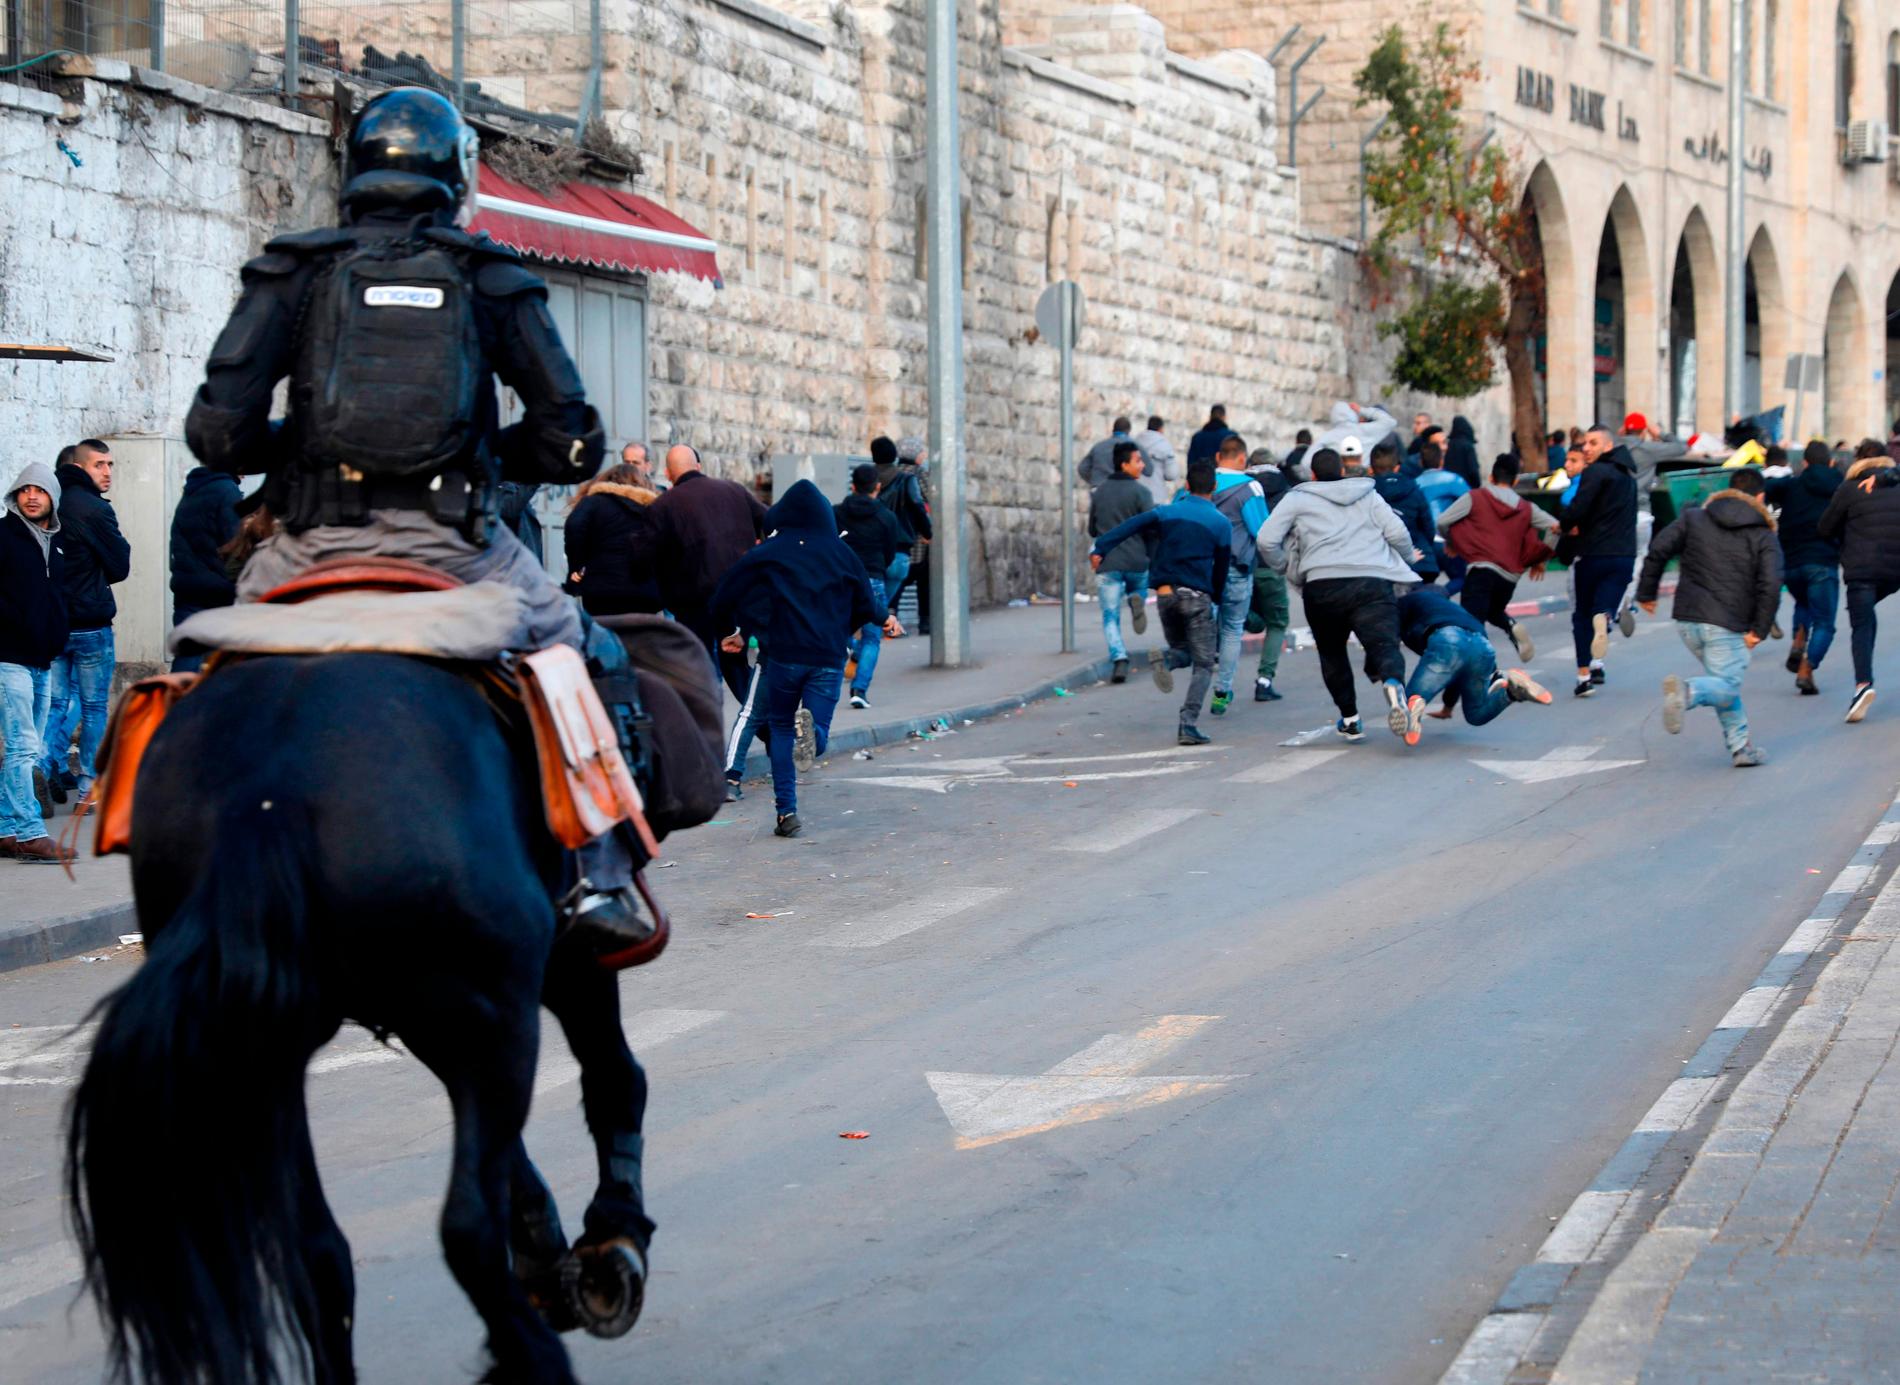 Polis på hästar jagar bort demonstranter i Jerusalem